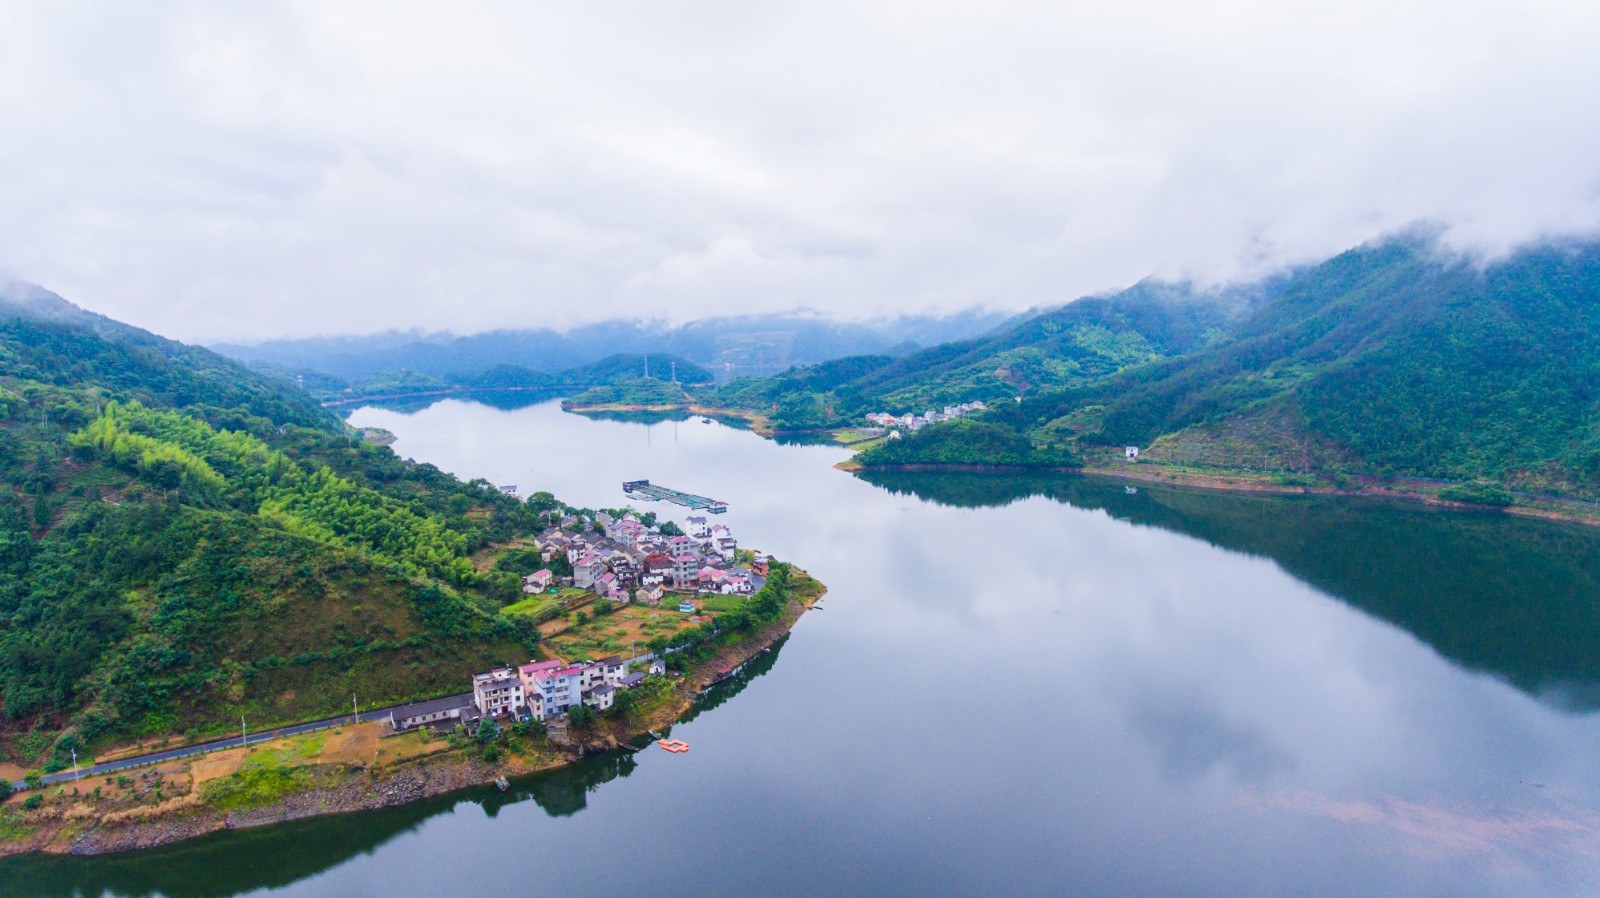 中旅国际计划投资杭州千岛湖 打造世界级“湖泊+”度假区